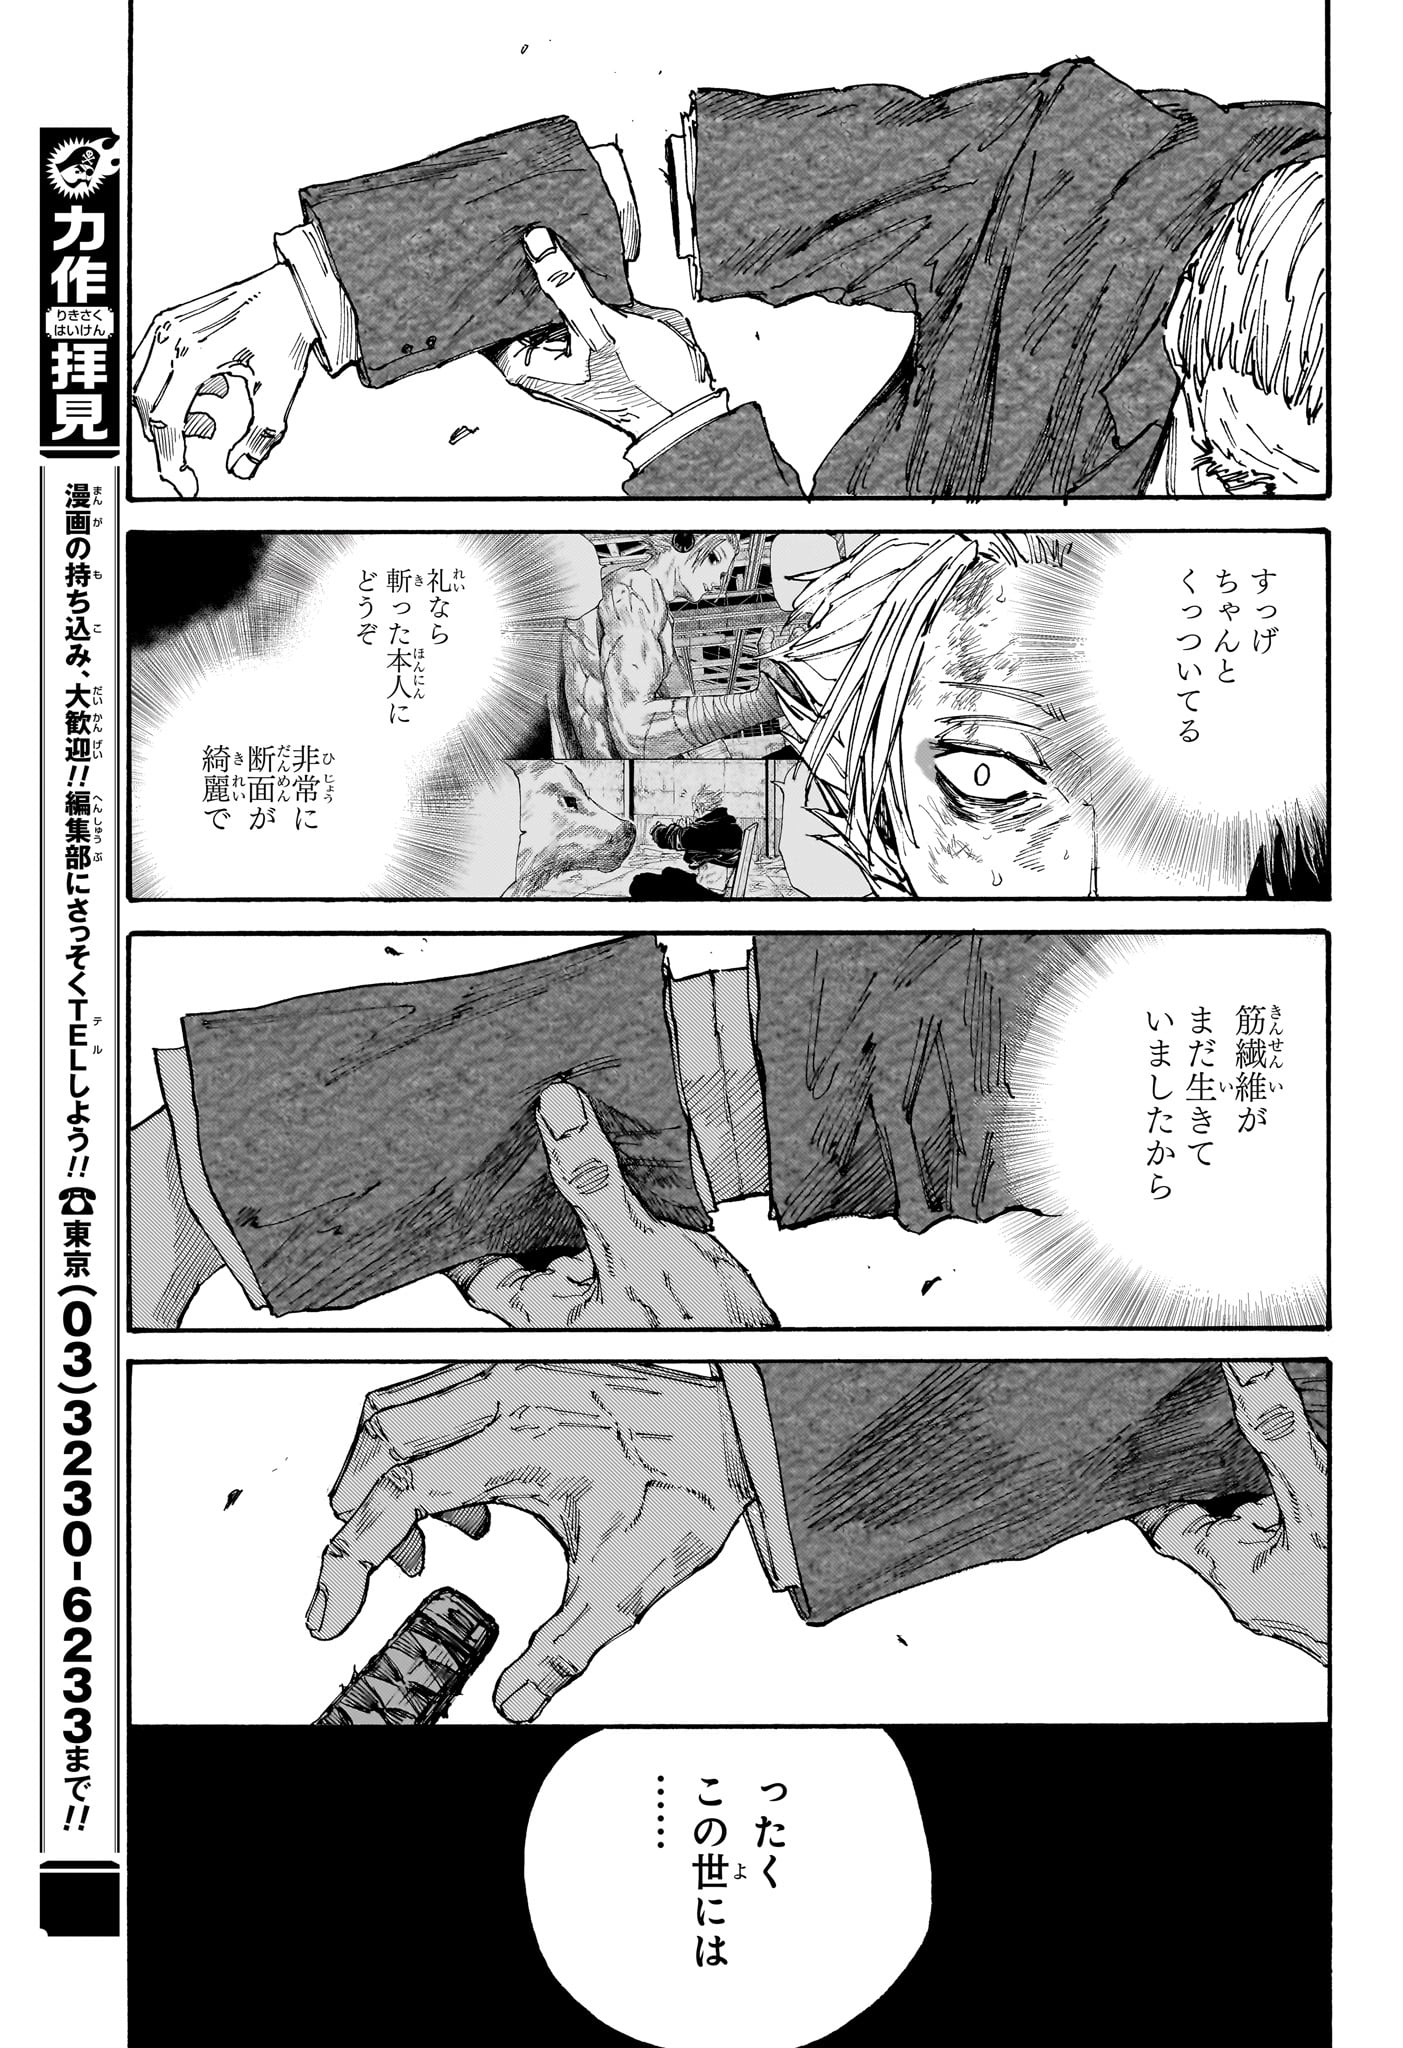 Sakamoto Days - Chapter 166 - Page 17